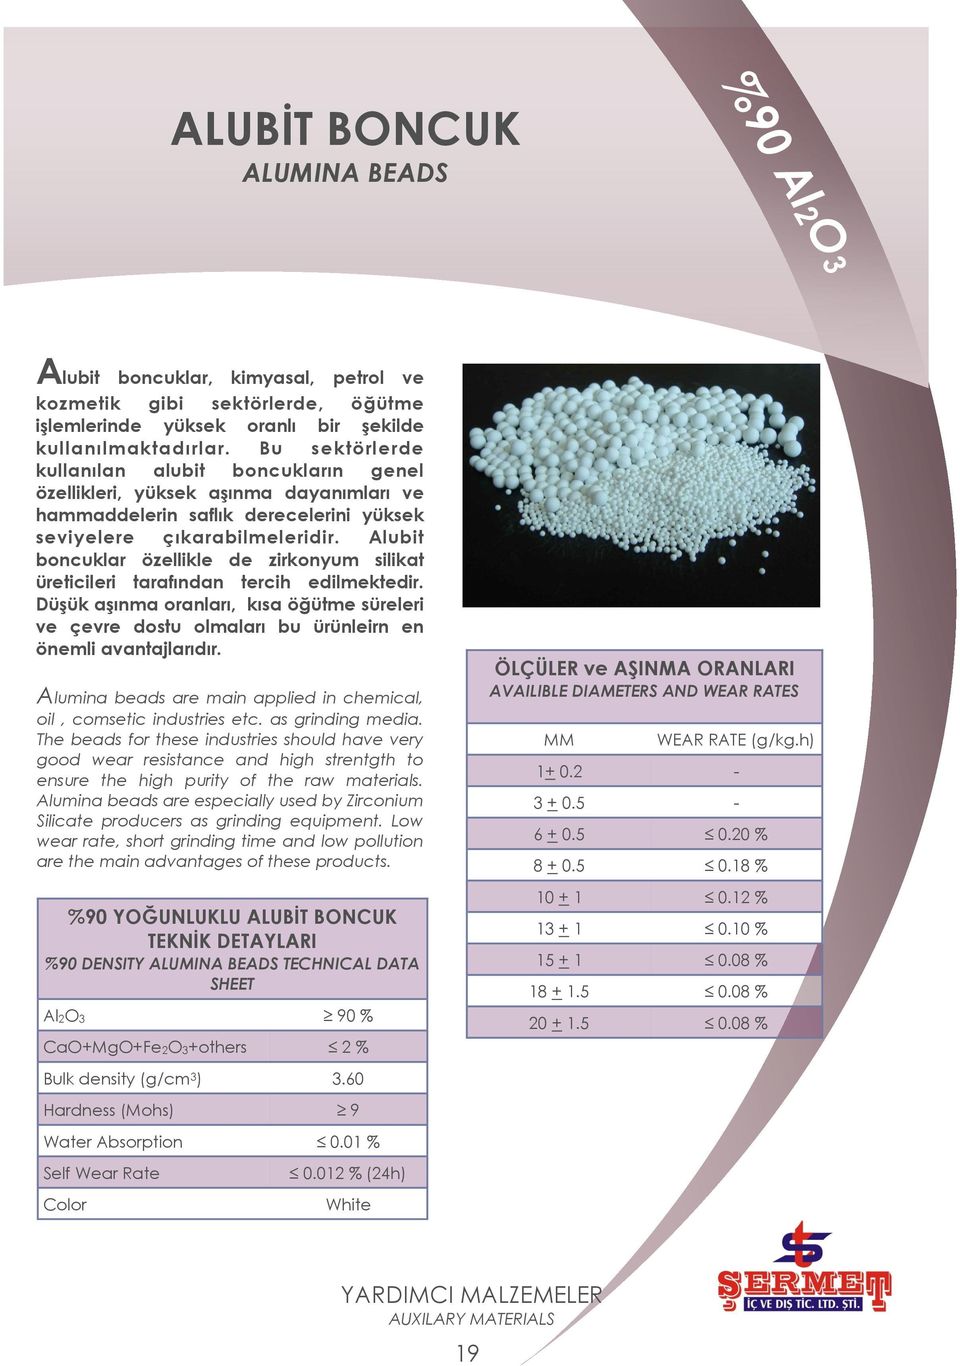 Alubit boncuklar özellikle de zirkonyum silikat üreticileri tarafından tercih edilmektedir. DüĢük aģınma oranları, kısa öğütme süreleri ve çevre dostu olmaları bu ürünleirn en önemli avantajlarıdır.